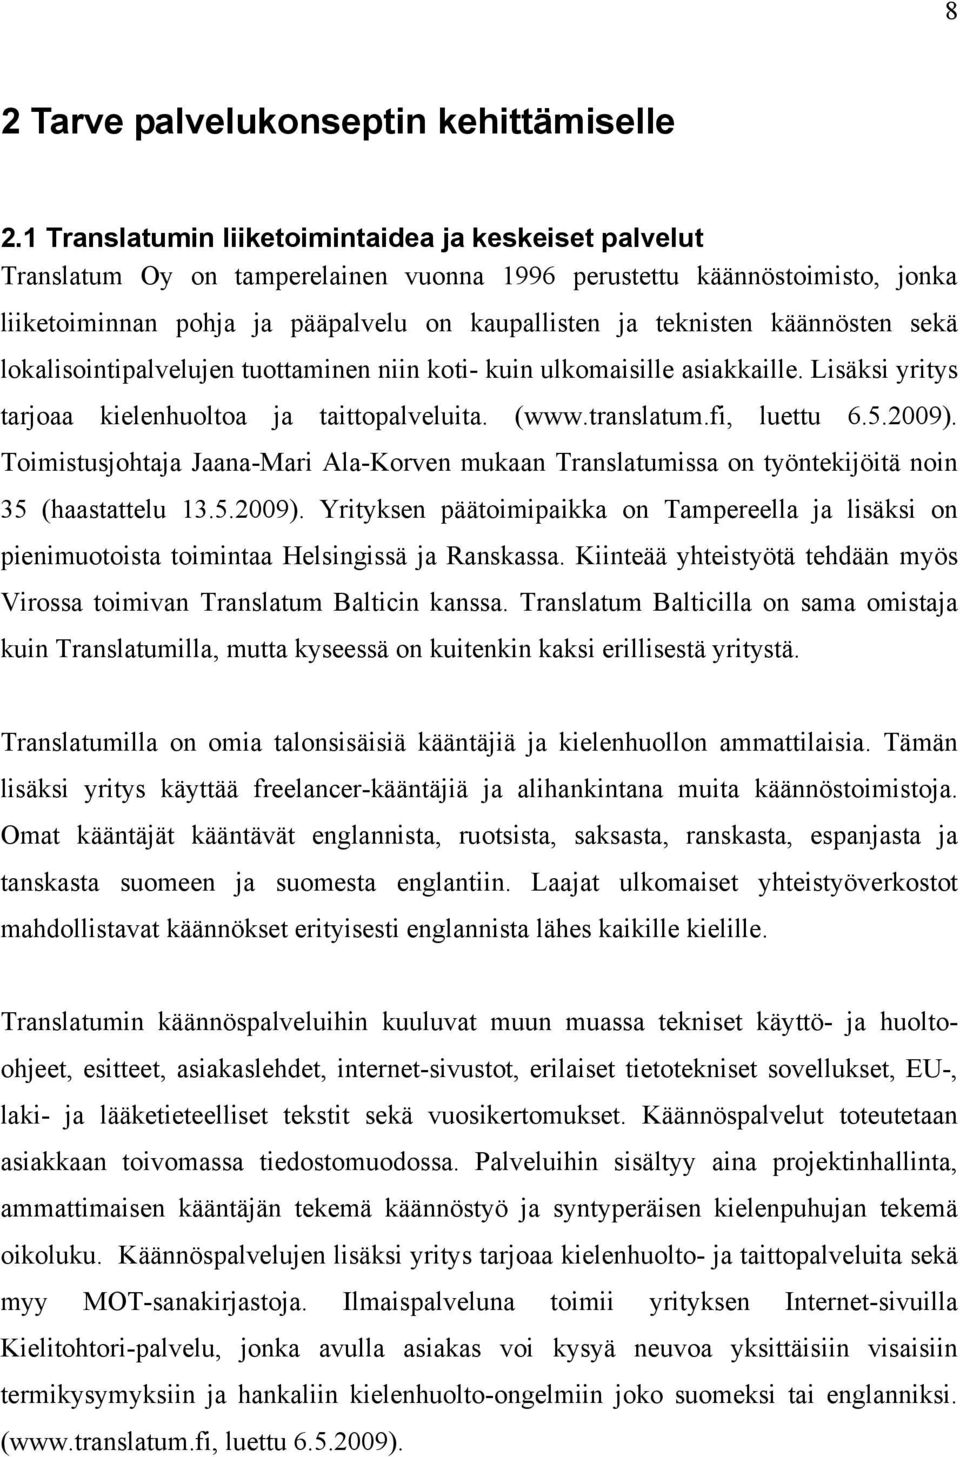 käännösten sekä lokalisointipalvelujen tuottaminen niin koti- kuin ulkomaisille asiakkaille. Lisäksi yritys tarjoaa kielenhuoltoa ja taittopalveluita. (www.translatum.fi, luettu 6.5.2009).